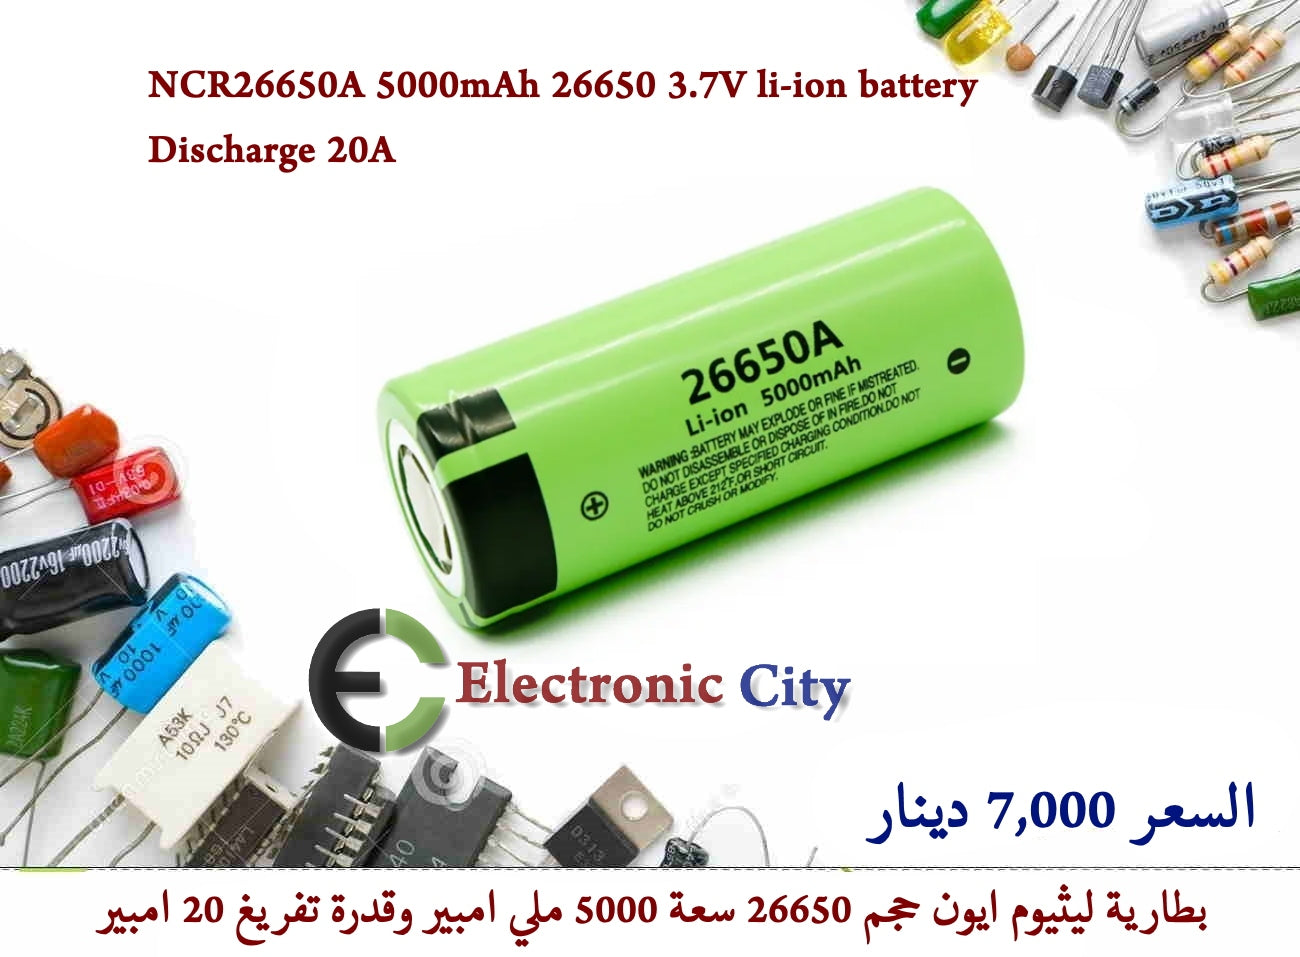 NCR26650A 5000mAh 26650 3.7V li-ion battery discharge 20A